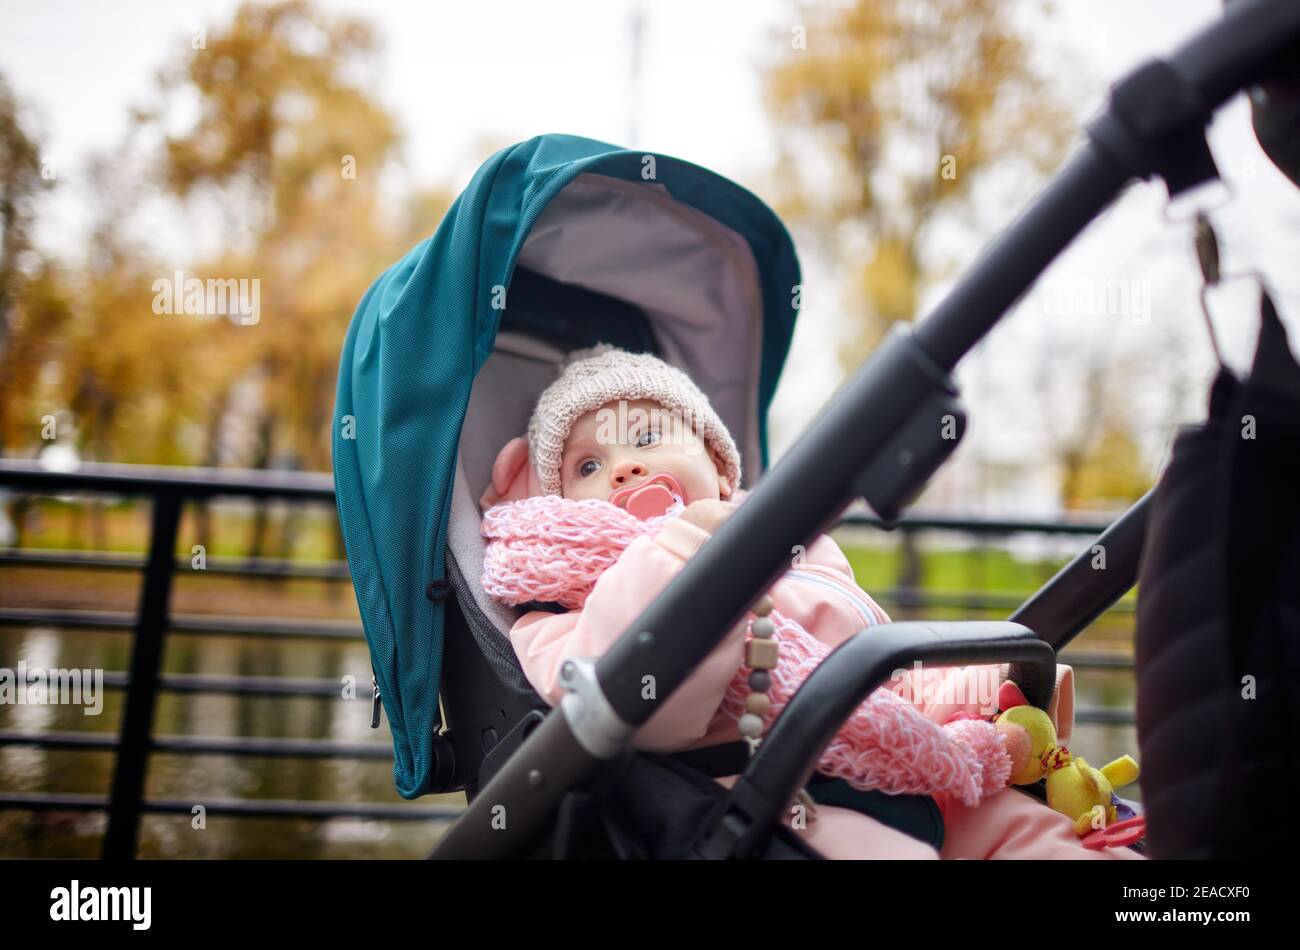 Bébé dans une poussette lors d'une promenade dans le parc d'automne. Adorable petite fille dans des vêtements chauds assis dans une poussette bleue. Enfant avec mamelon en buggy Banque D'Images